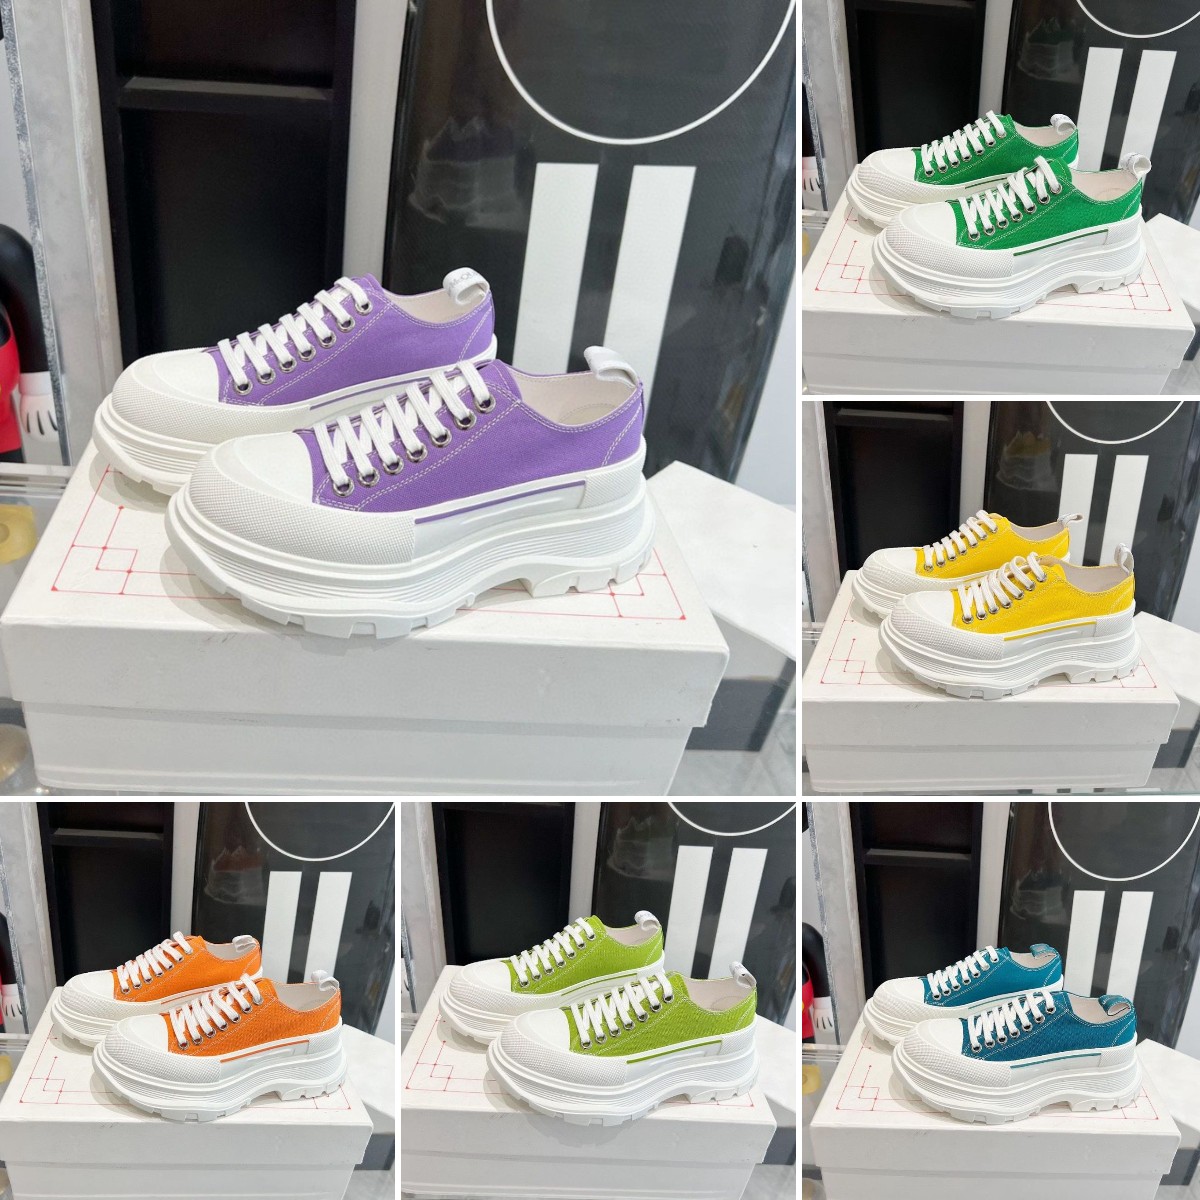 

Tread Slick Sneaker Designer Graffiti Sneakers Women Men Lace-up Rubber Canvas Trainers MC Deck Low-Top Casual Shoes Platform Walking Shoes Size 35-45, Colour 4